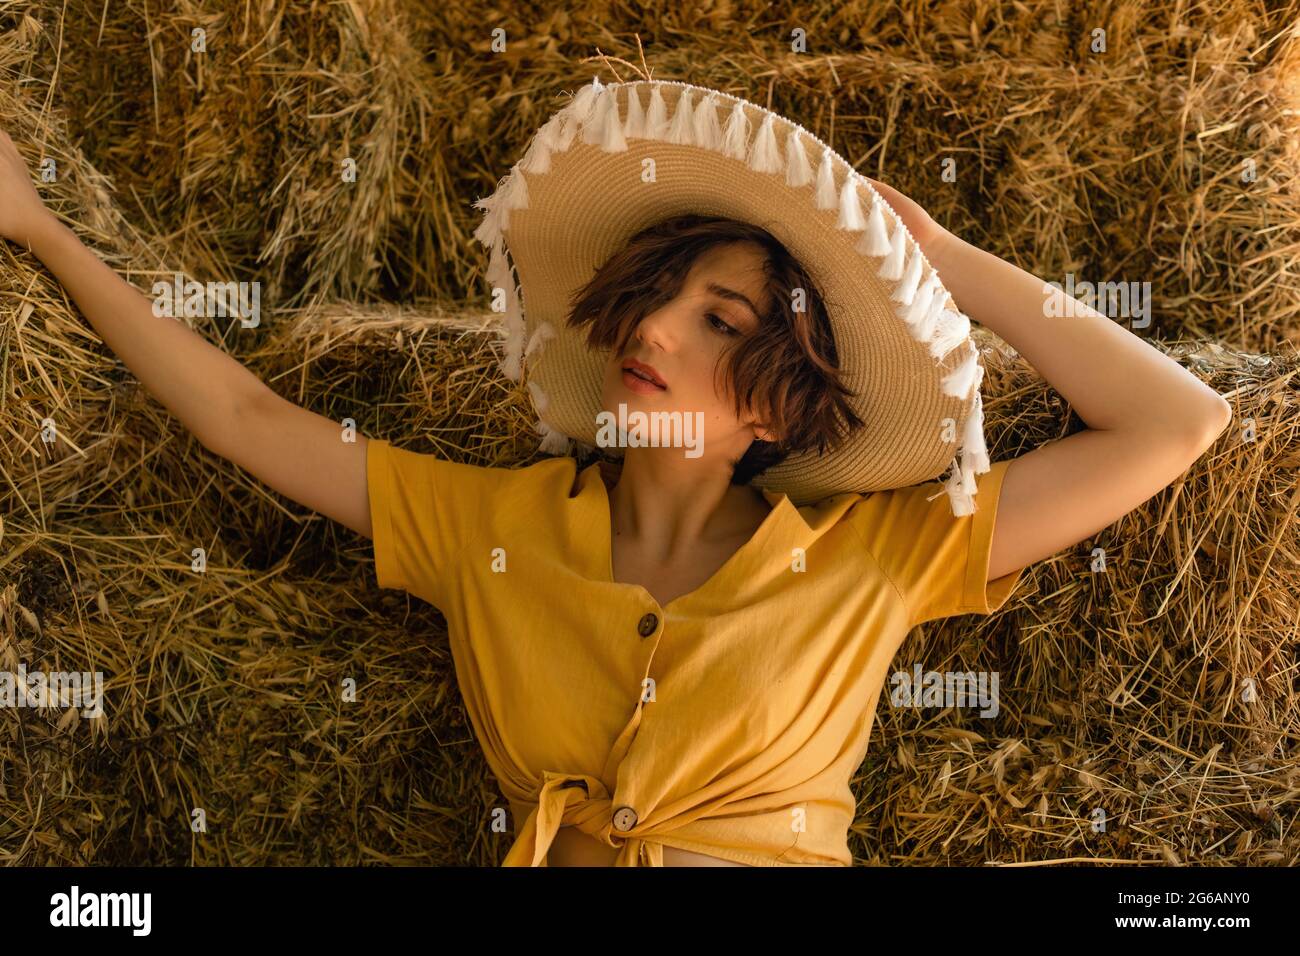 Ritratto di una donna con un cappello di paglia, camicia gialla seduta in un fienile. Foto Stock